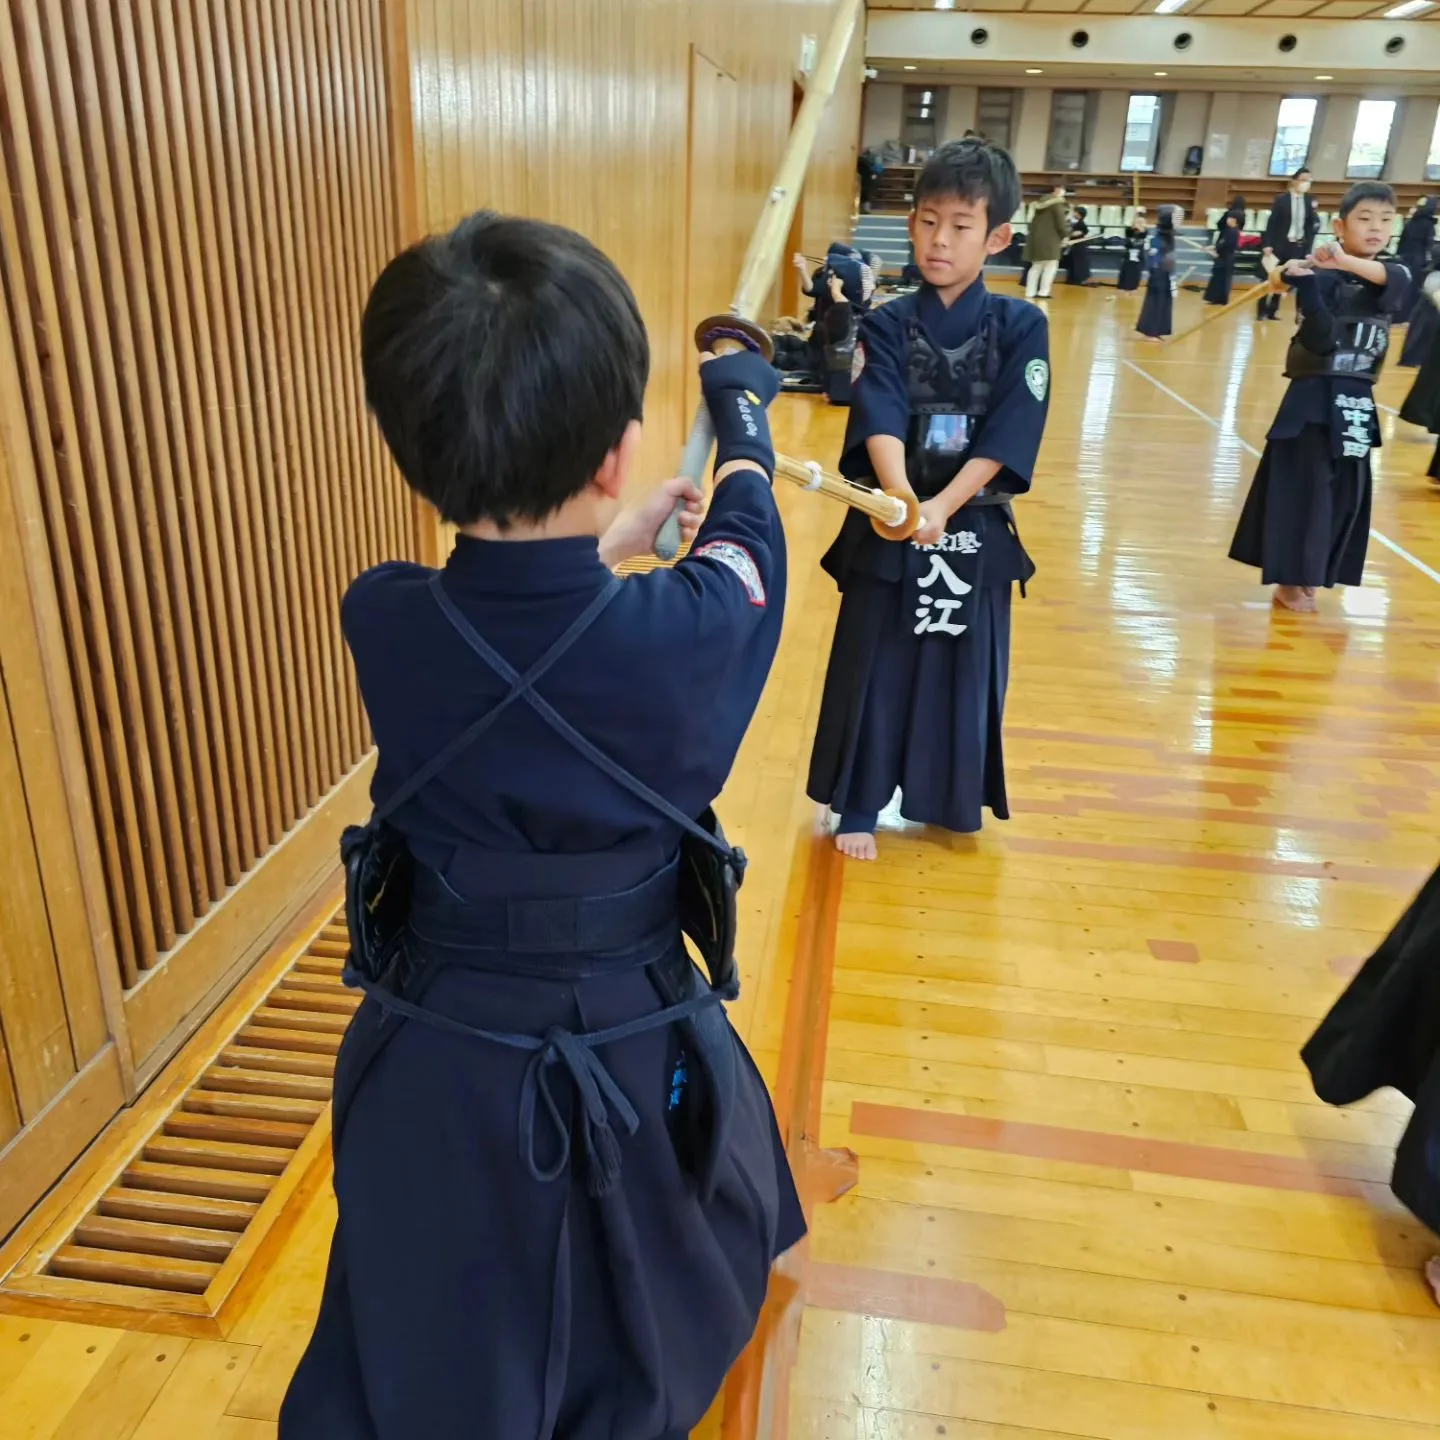 先心道場ジュニア剣道大会に参加させていただきました